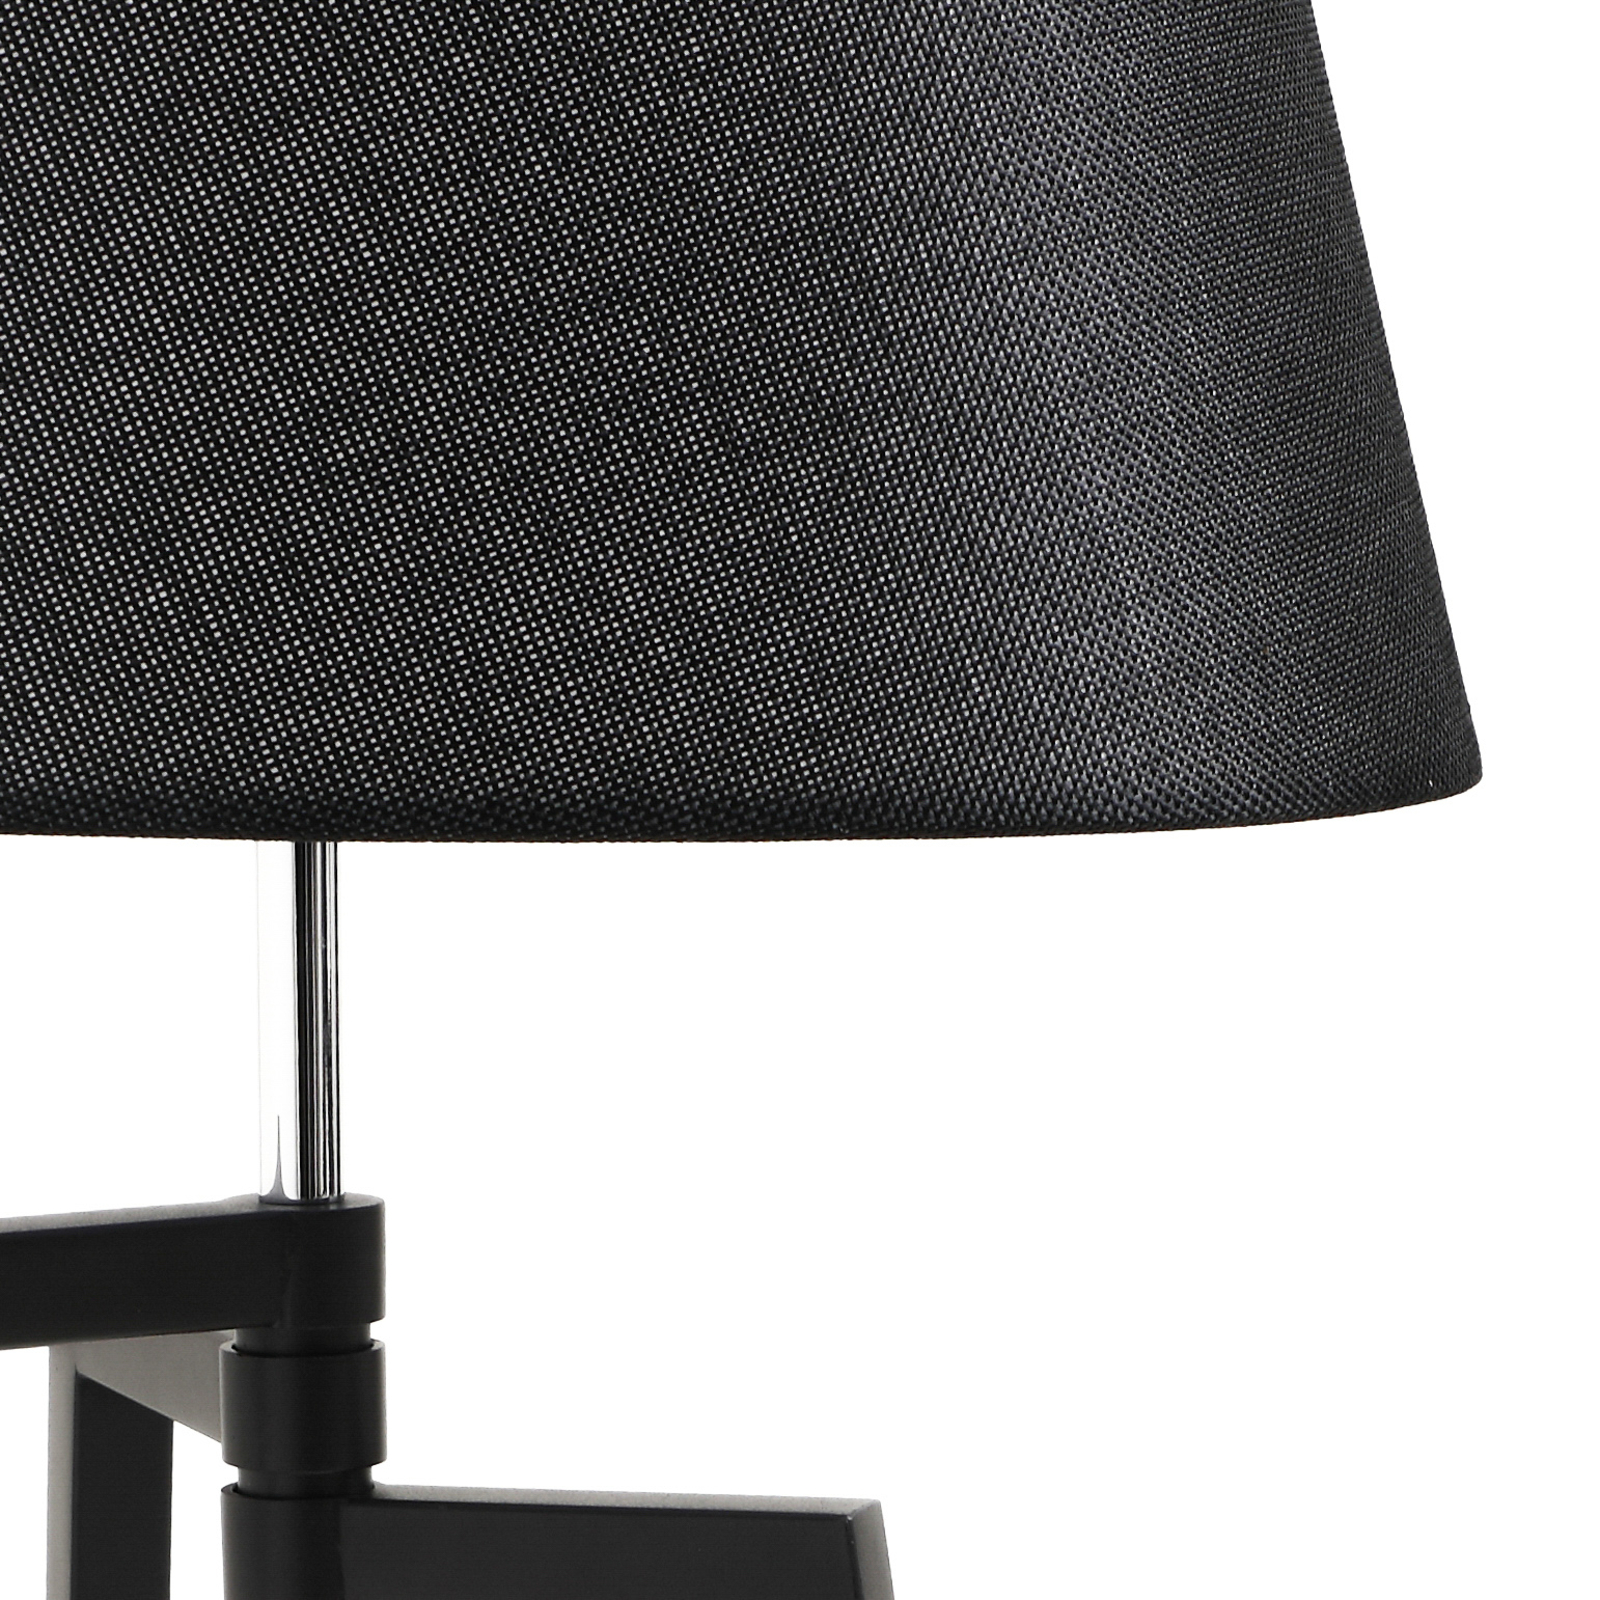 Lucande Amona bordslampa med trefot, svart